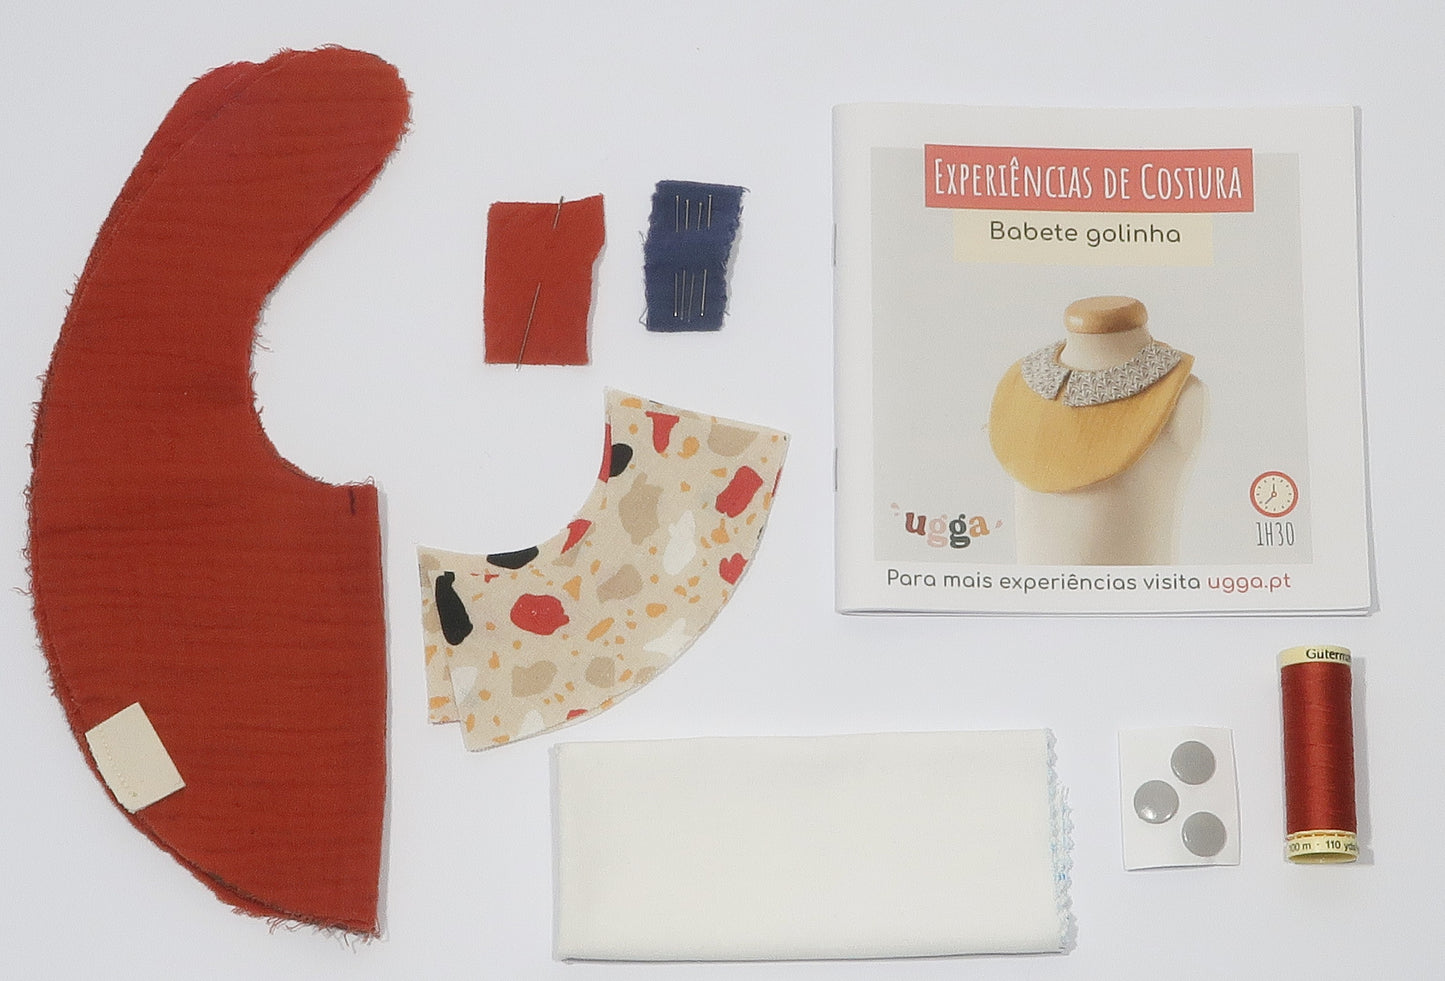 DIY Sewing Kits - Collar bib